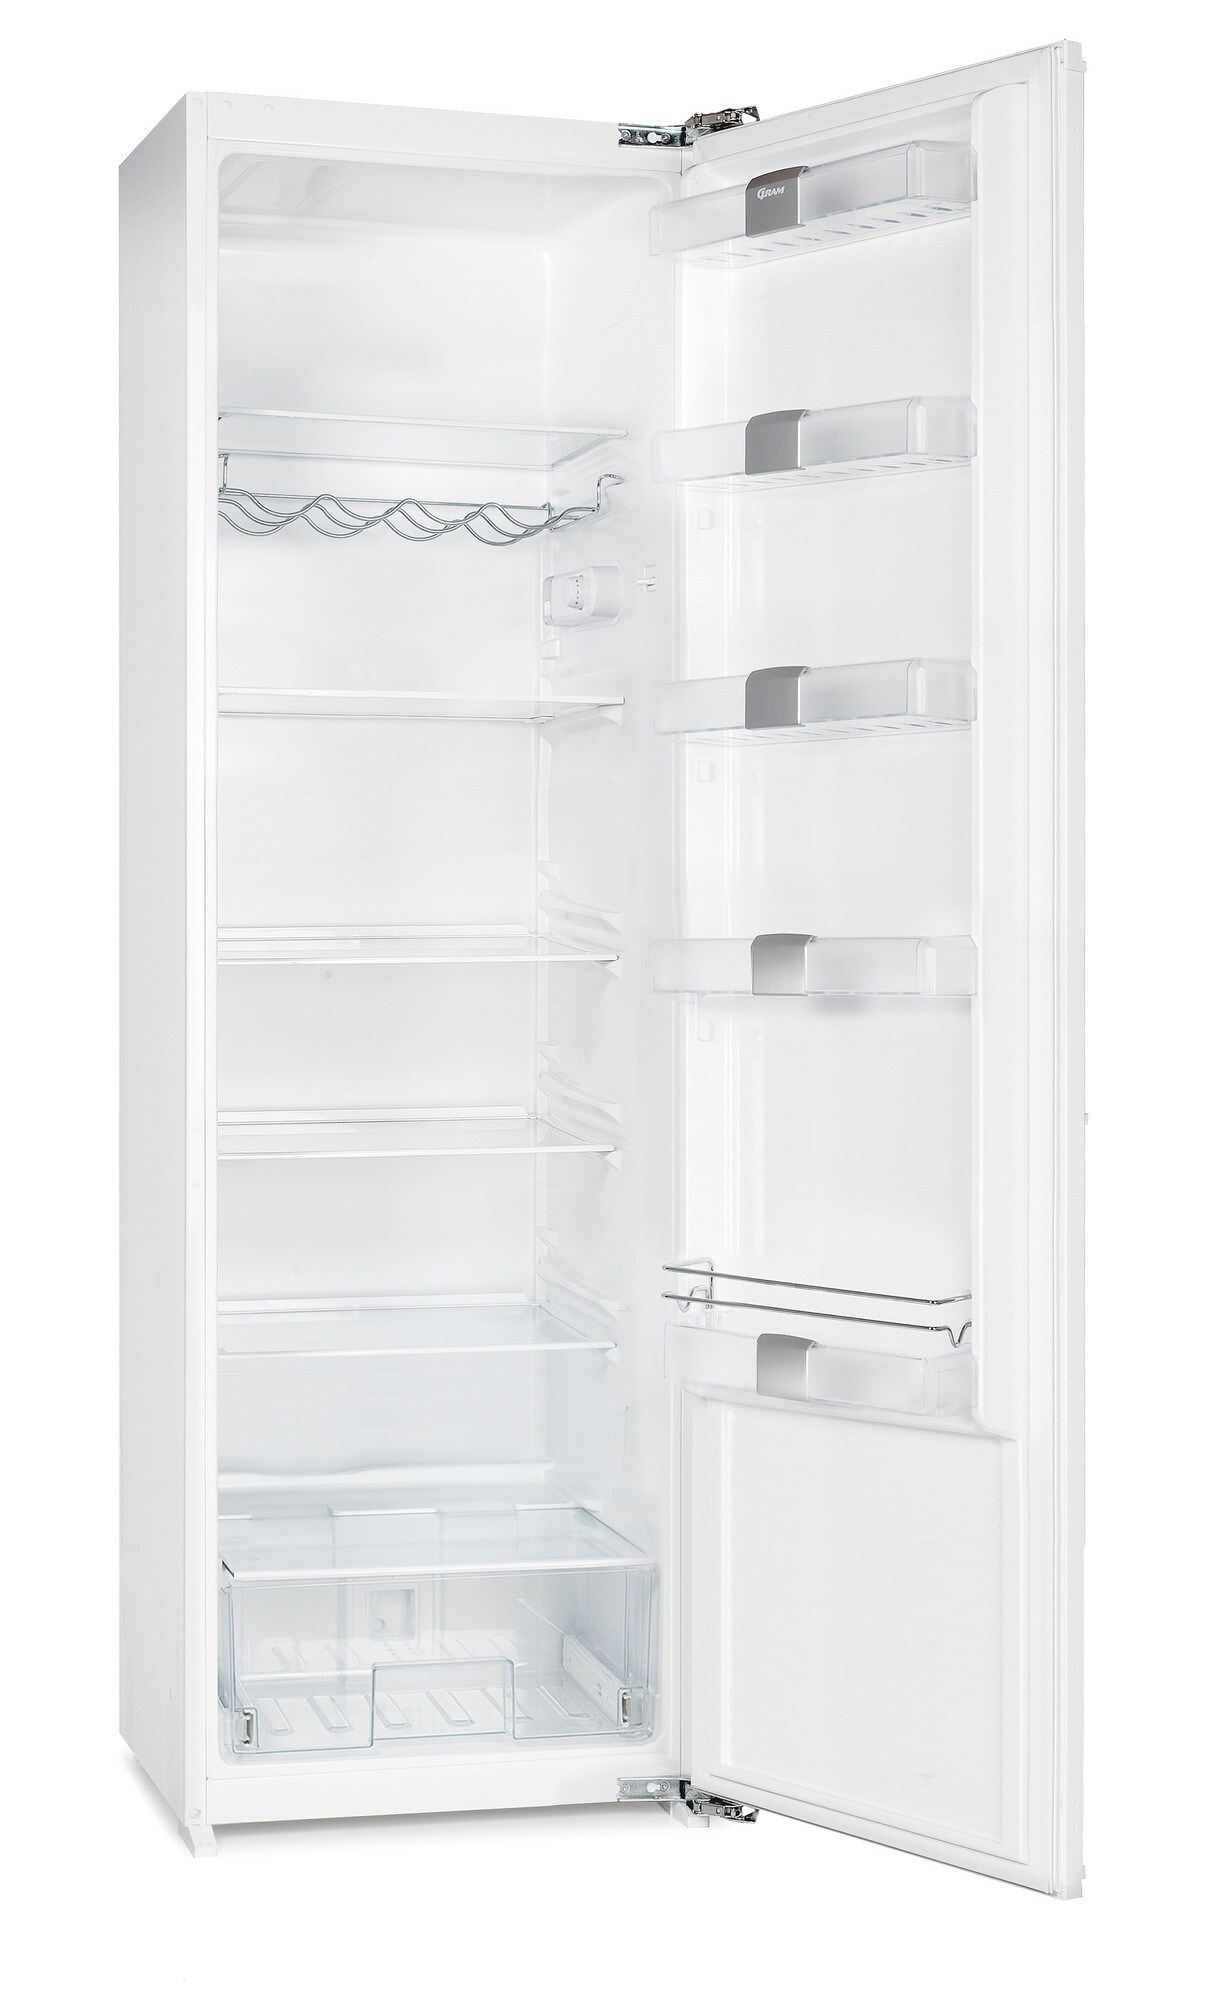 Gram køleskab KSI 3315-91 (177 cm) - Integrerede køleskabe og frysere -  Elgiganten